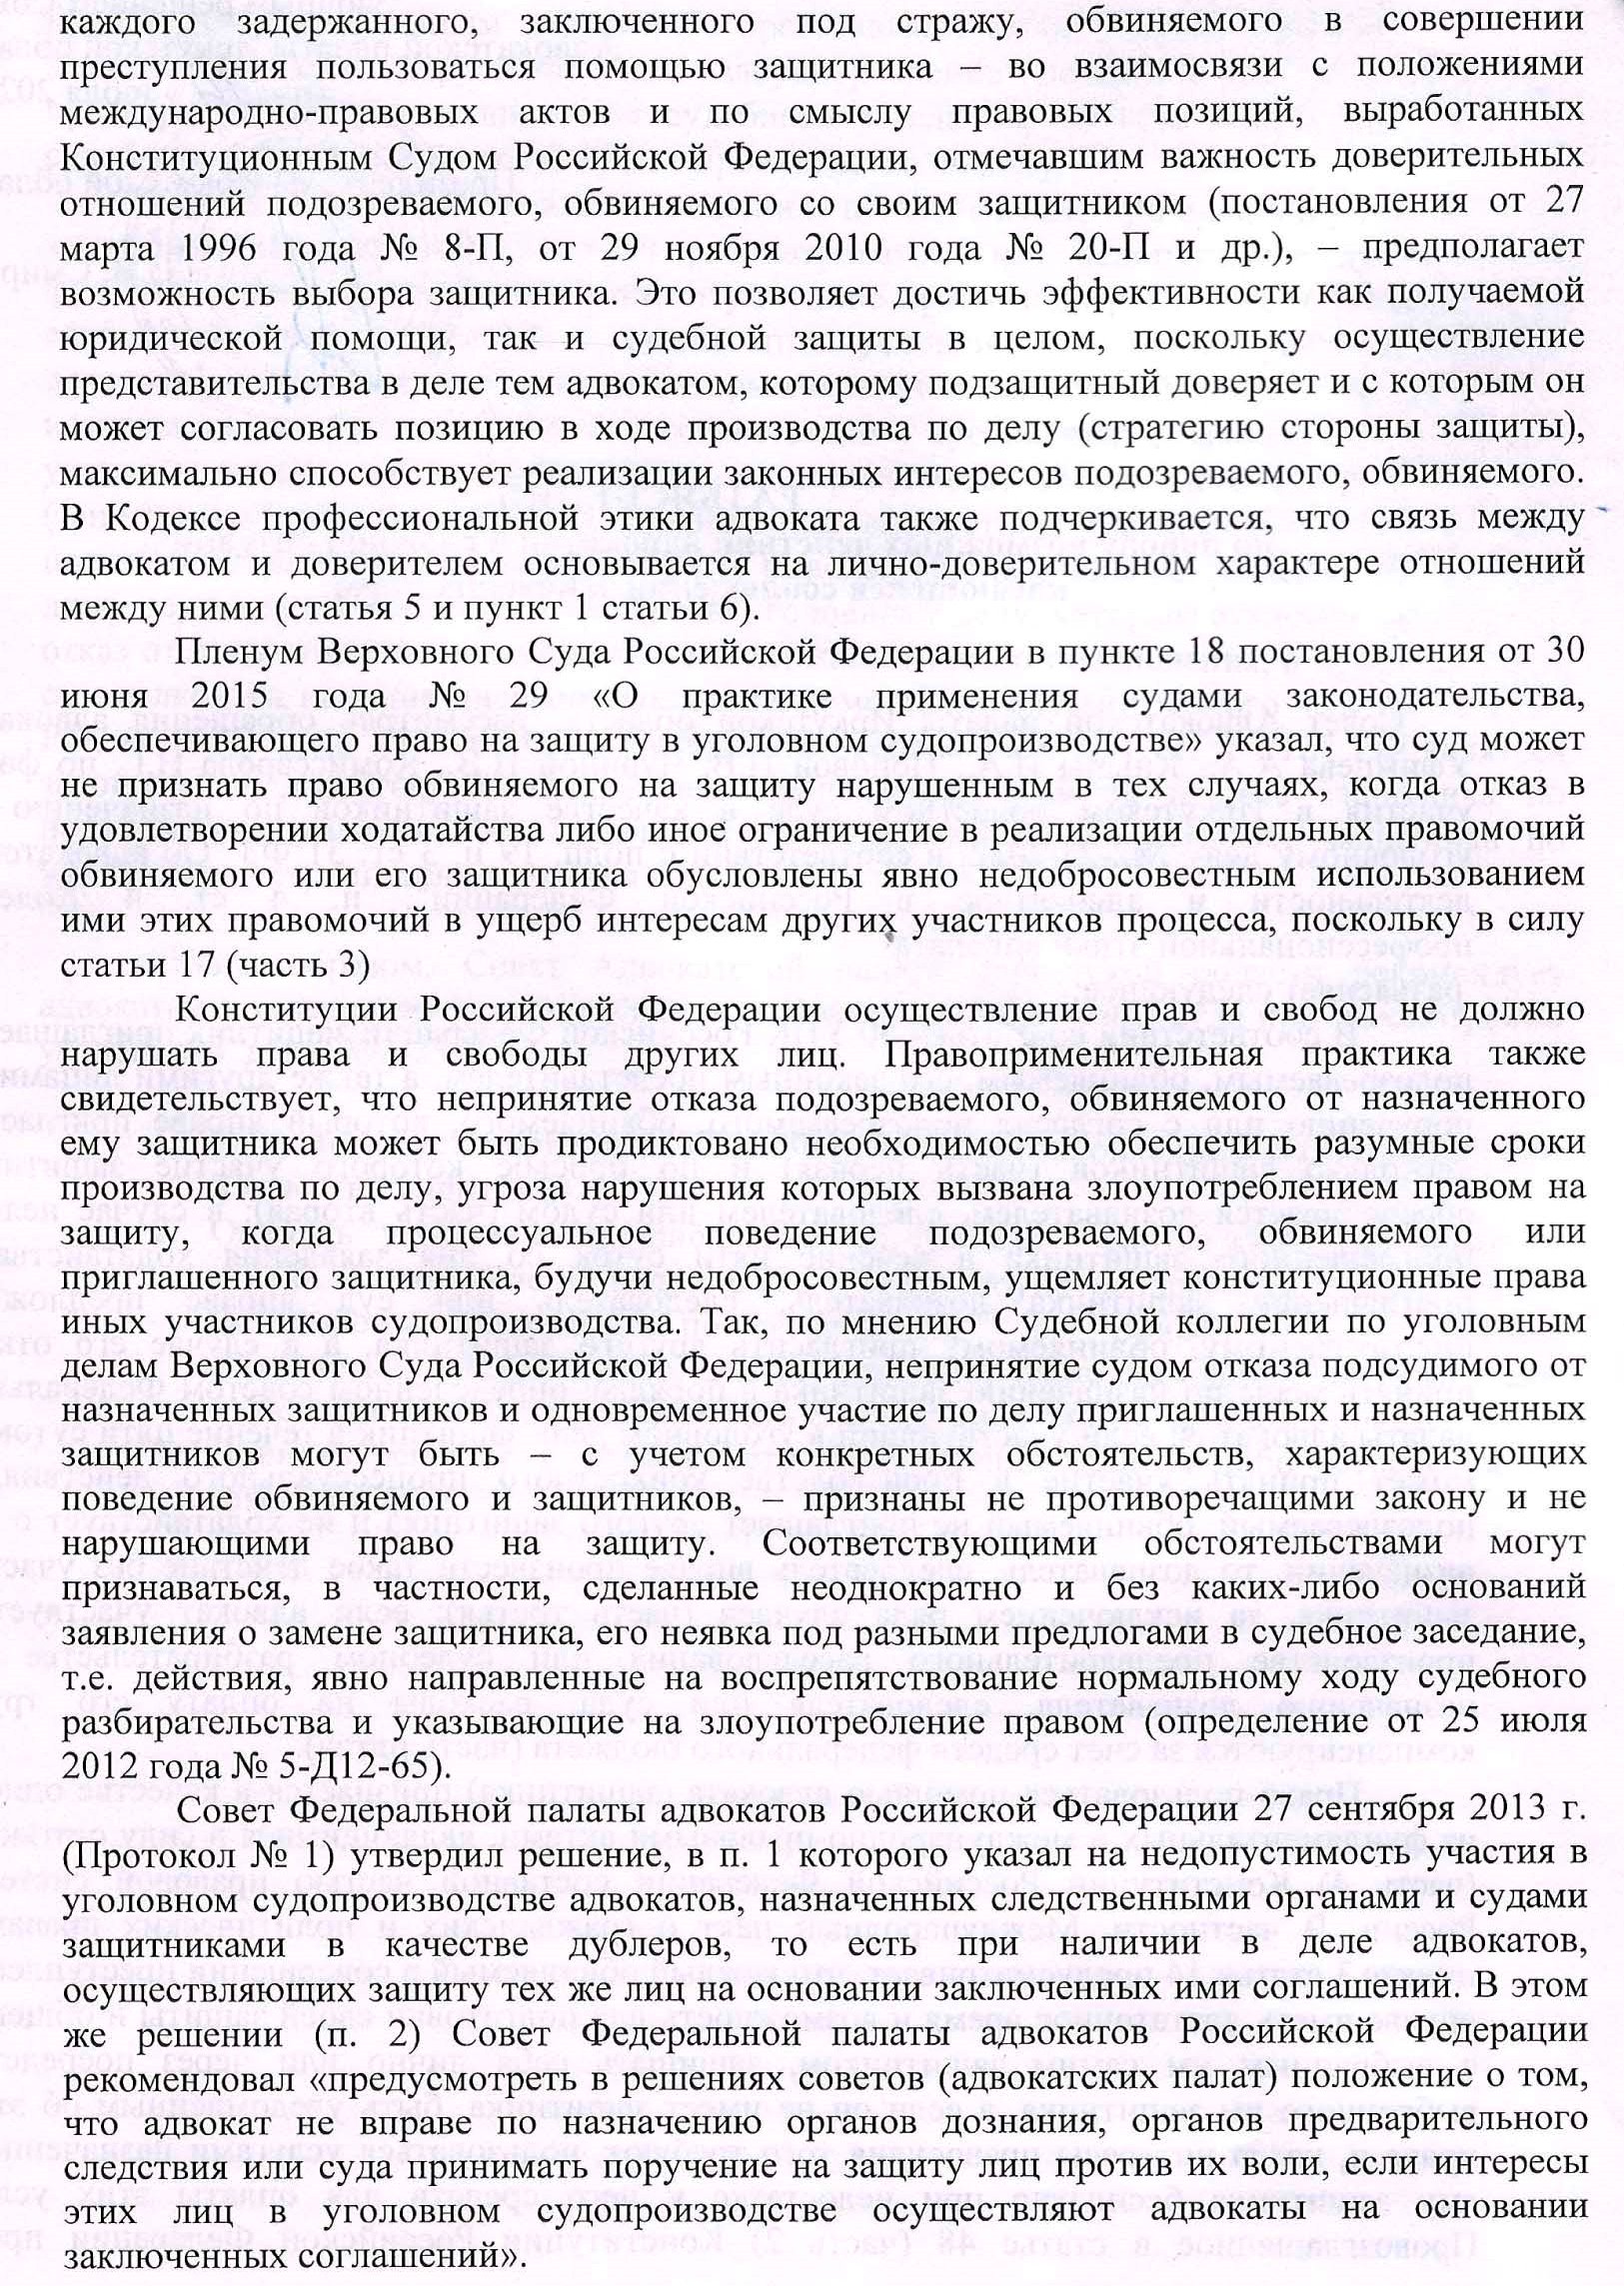 Razyasneniya po povodu vozmozhnyx dejstvij advokatov v slozhnoj eticheskoj situacii kasayushhejsya soblyudeniya eticheskix norm-2.jpg